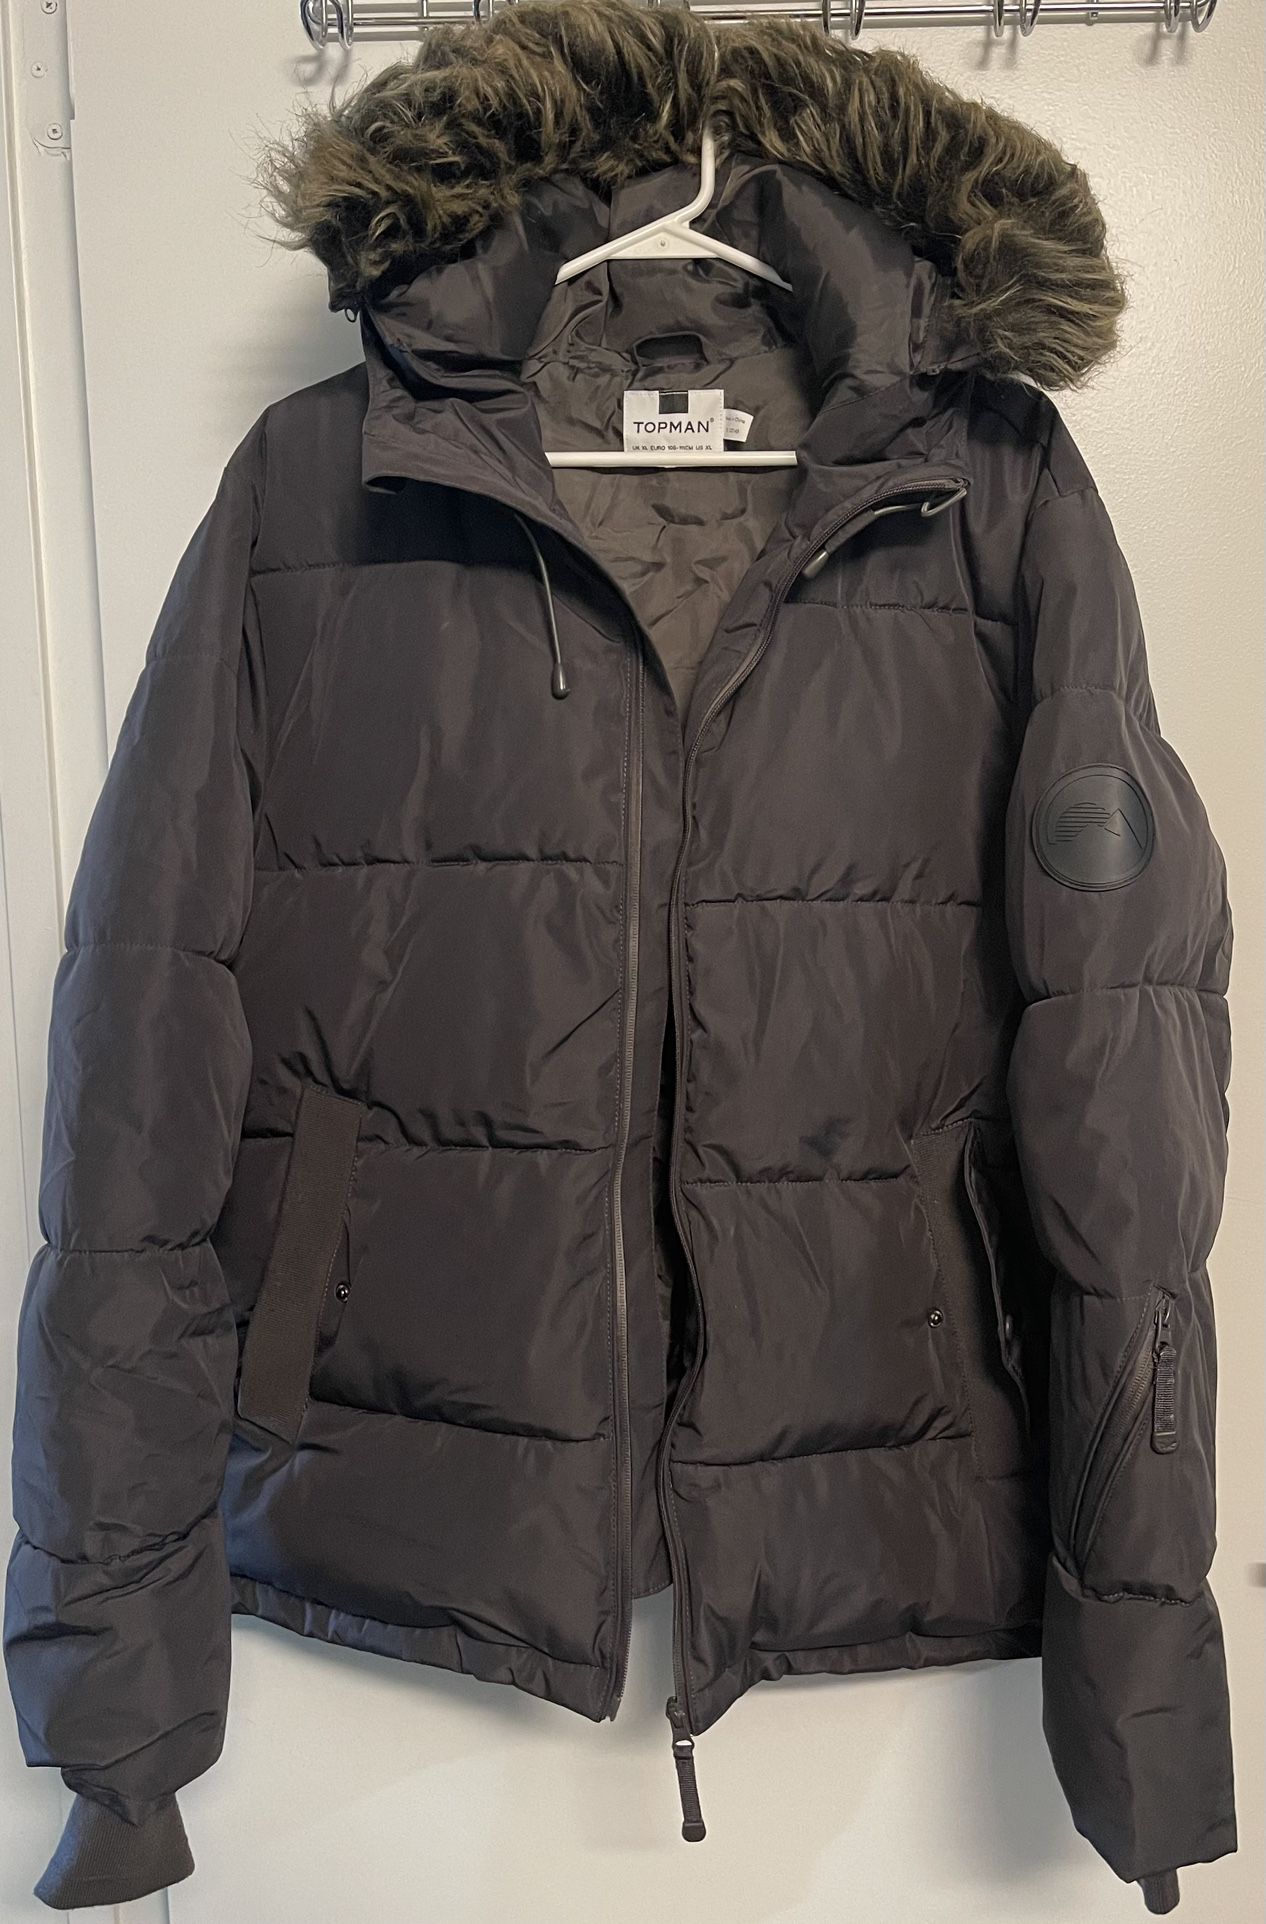 Topman Winter Coat